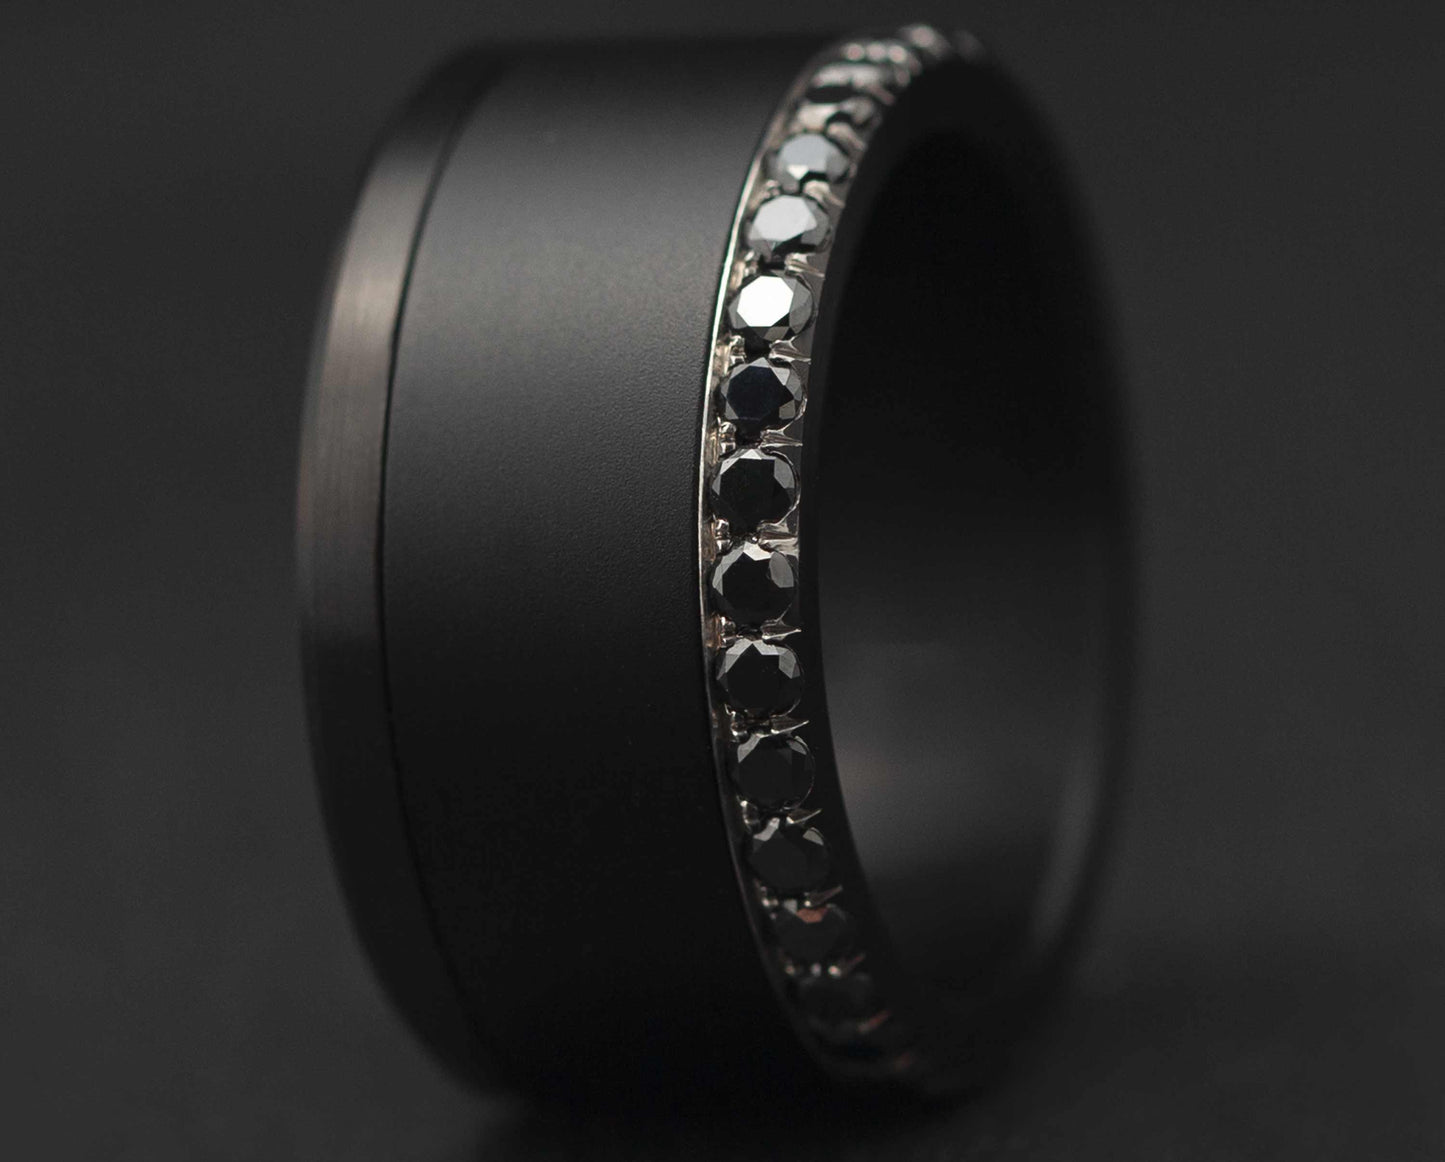 Base small black entièrement sertie de diamants noirs 1.9mm sur un côté